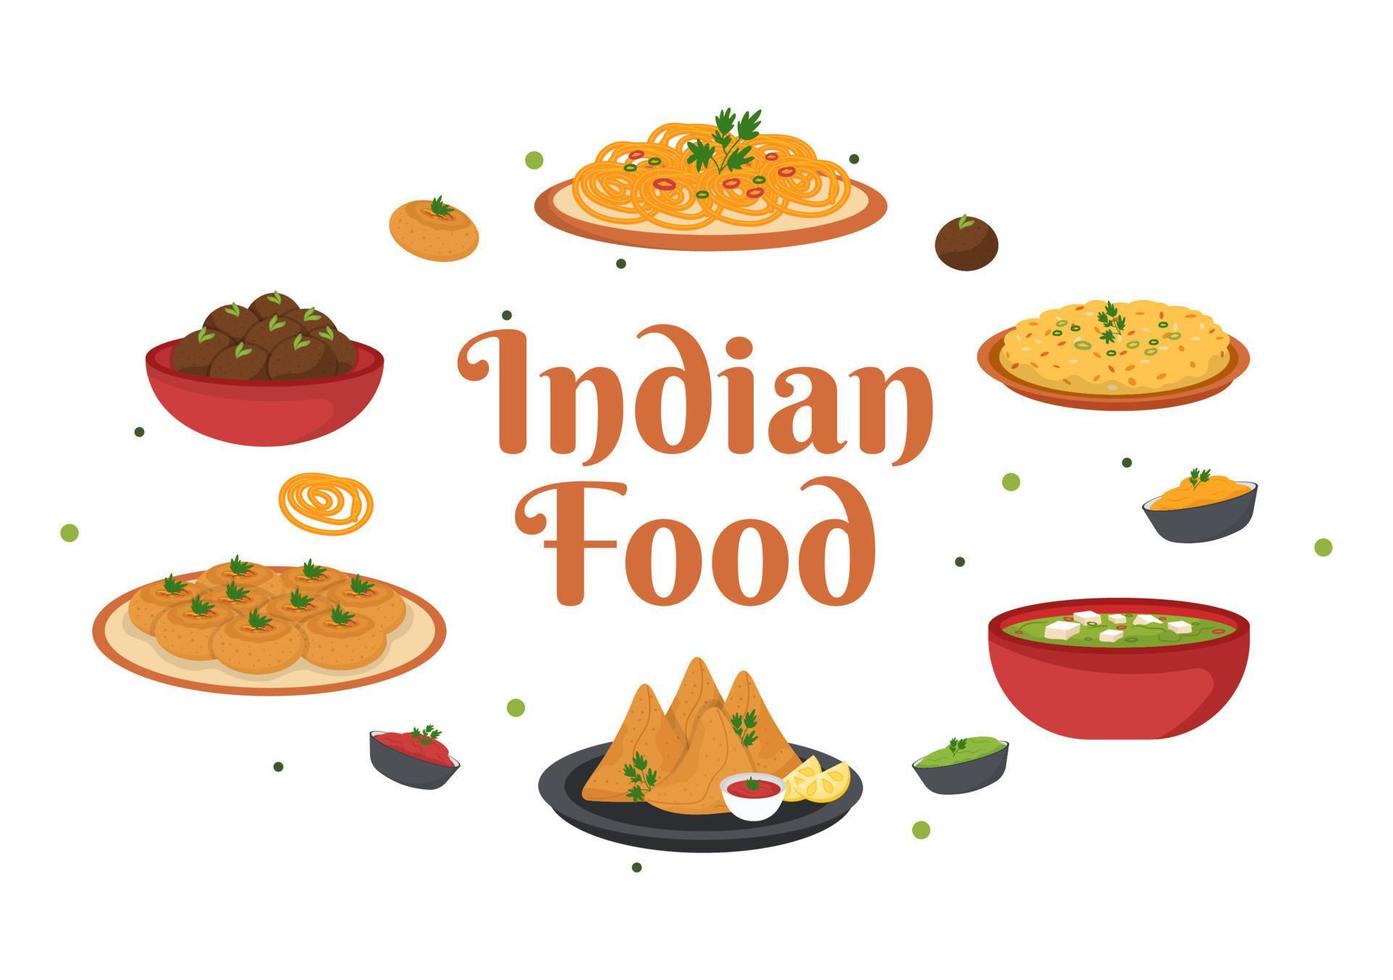 indische lebensmittelkarikaturillustration mit verschiedener sammlung köstlicher traditioneller küchengerichte im flachen stildesign vektor